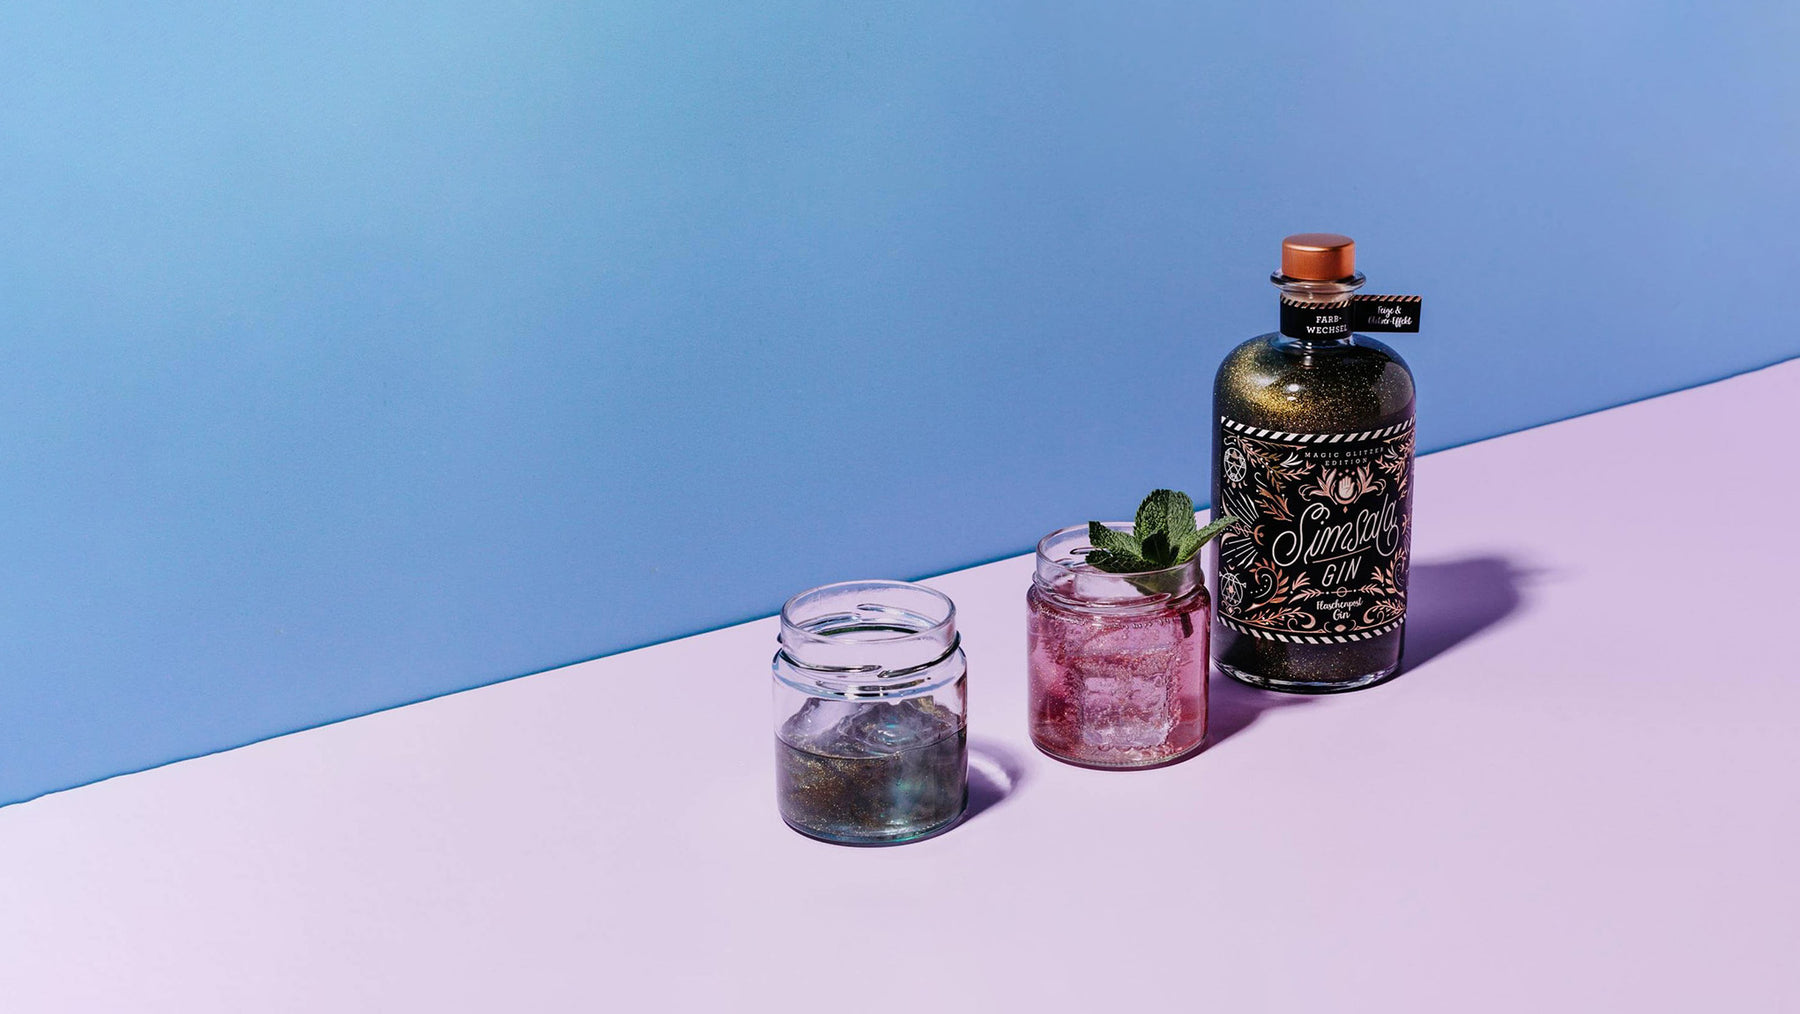 Simsala Gin von Flaschenpost Gin bringt Magie ins Glas, neben seinem magischen Farbwechsel glitzert dieser Gin gold und ist mit seinem einzigartigem Etikett Design ein wahrer Hingucker. 